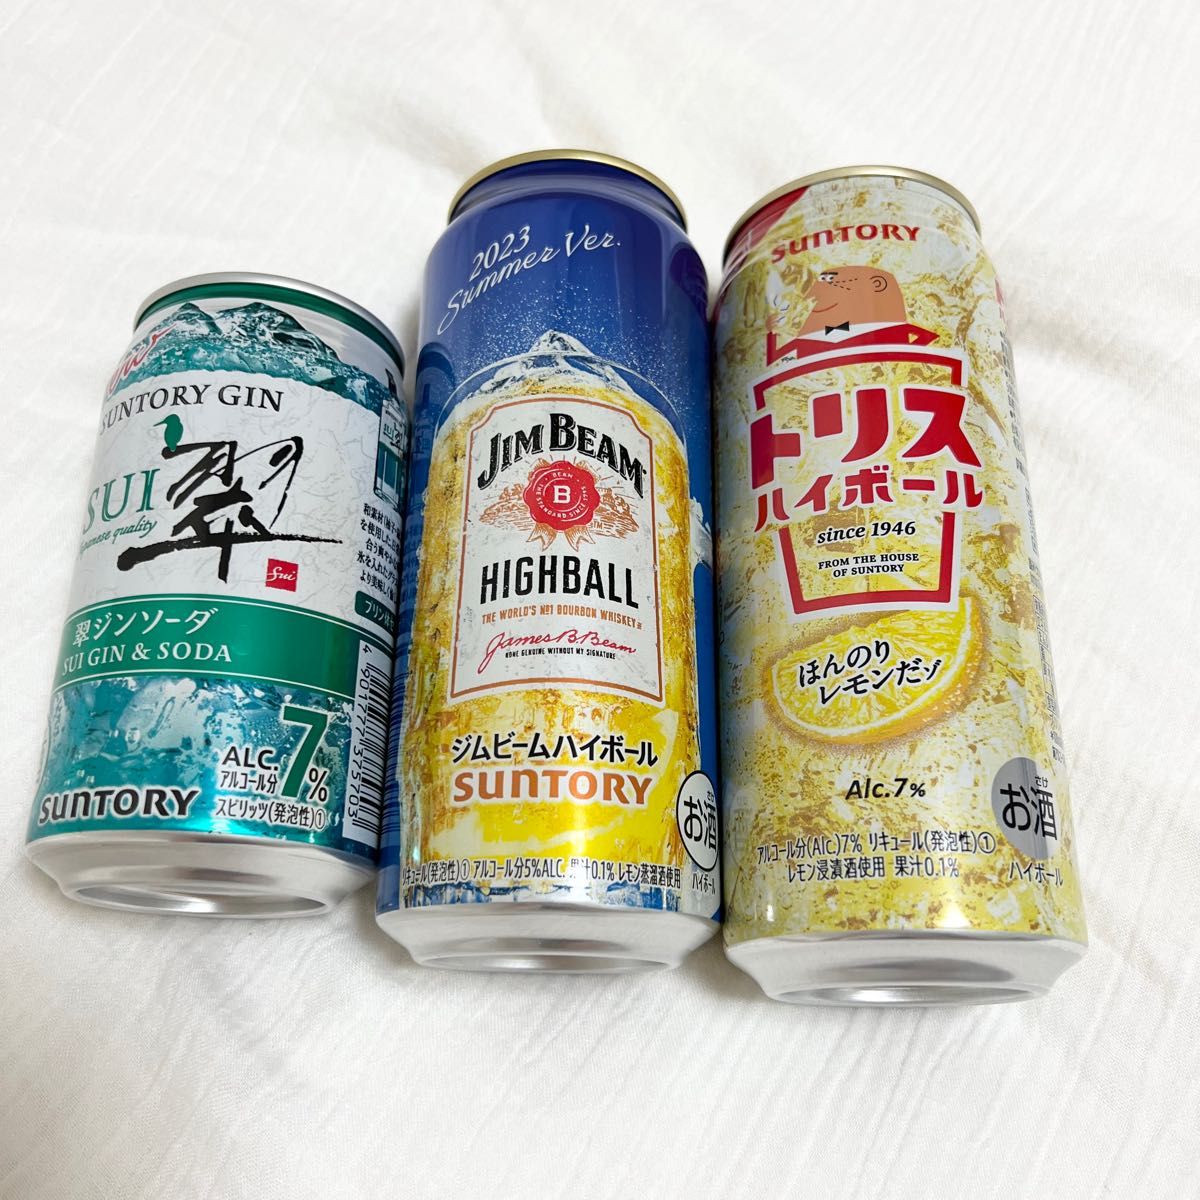 翠ジンソーダ トリスハイボール - ビール・発泡酒